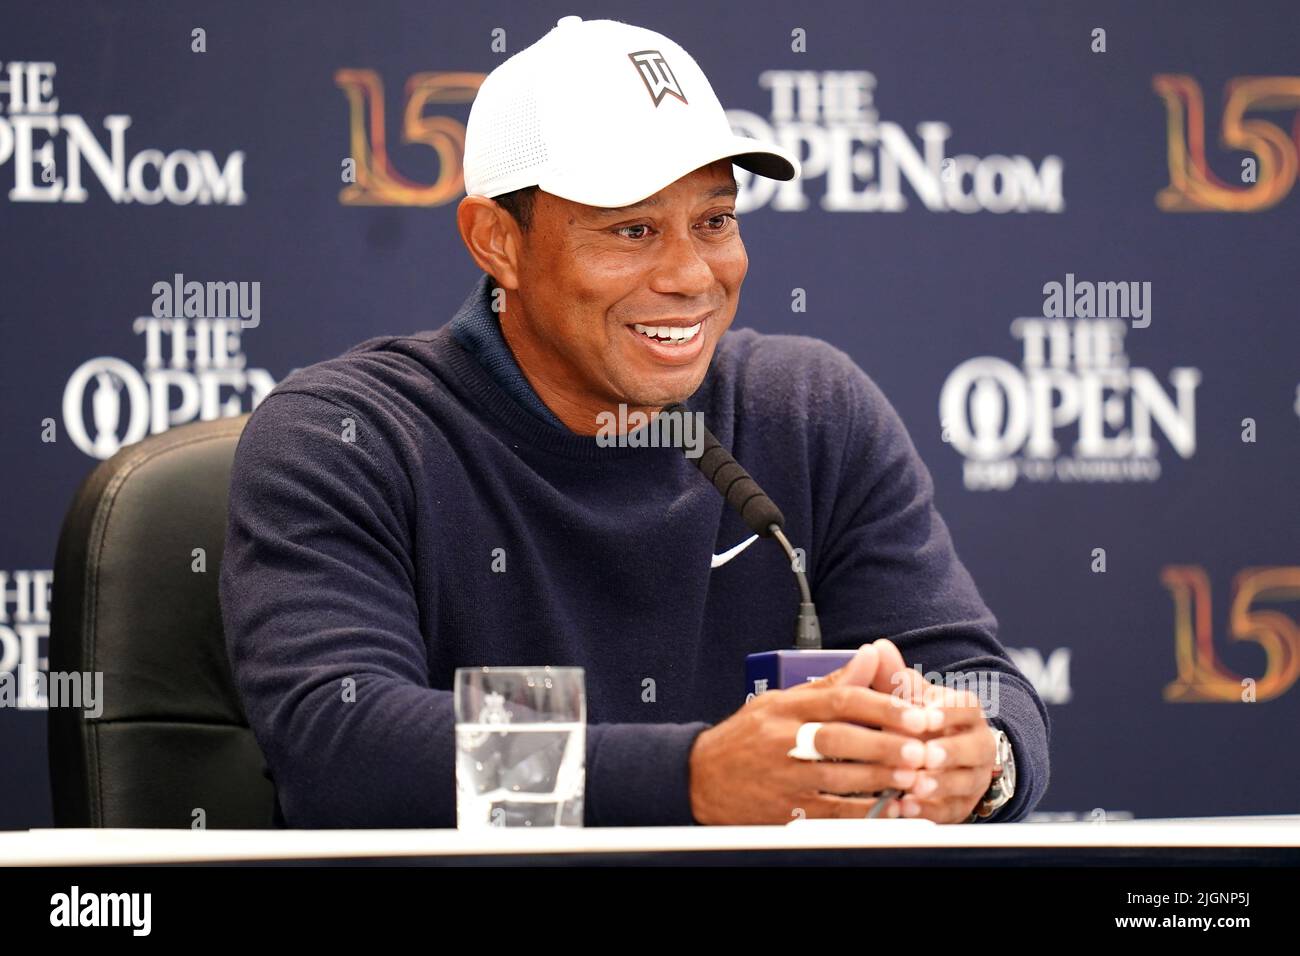 Tiger Woods aux États-Unis lors d'une conférence de presse sur la troisième journée d'entraînement de l'Open at the Old course, St Andrews. Date de la photo: Mardi 12 juillet 2022. Banque D'Images